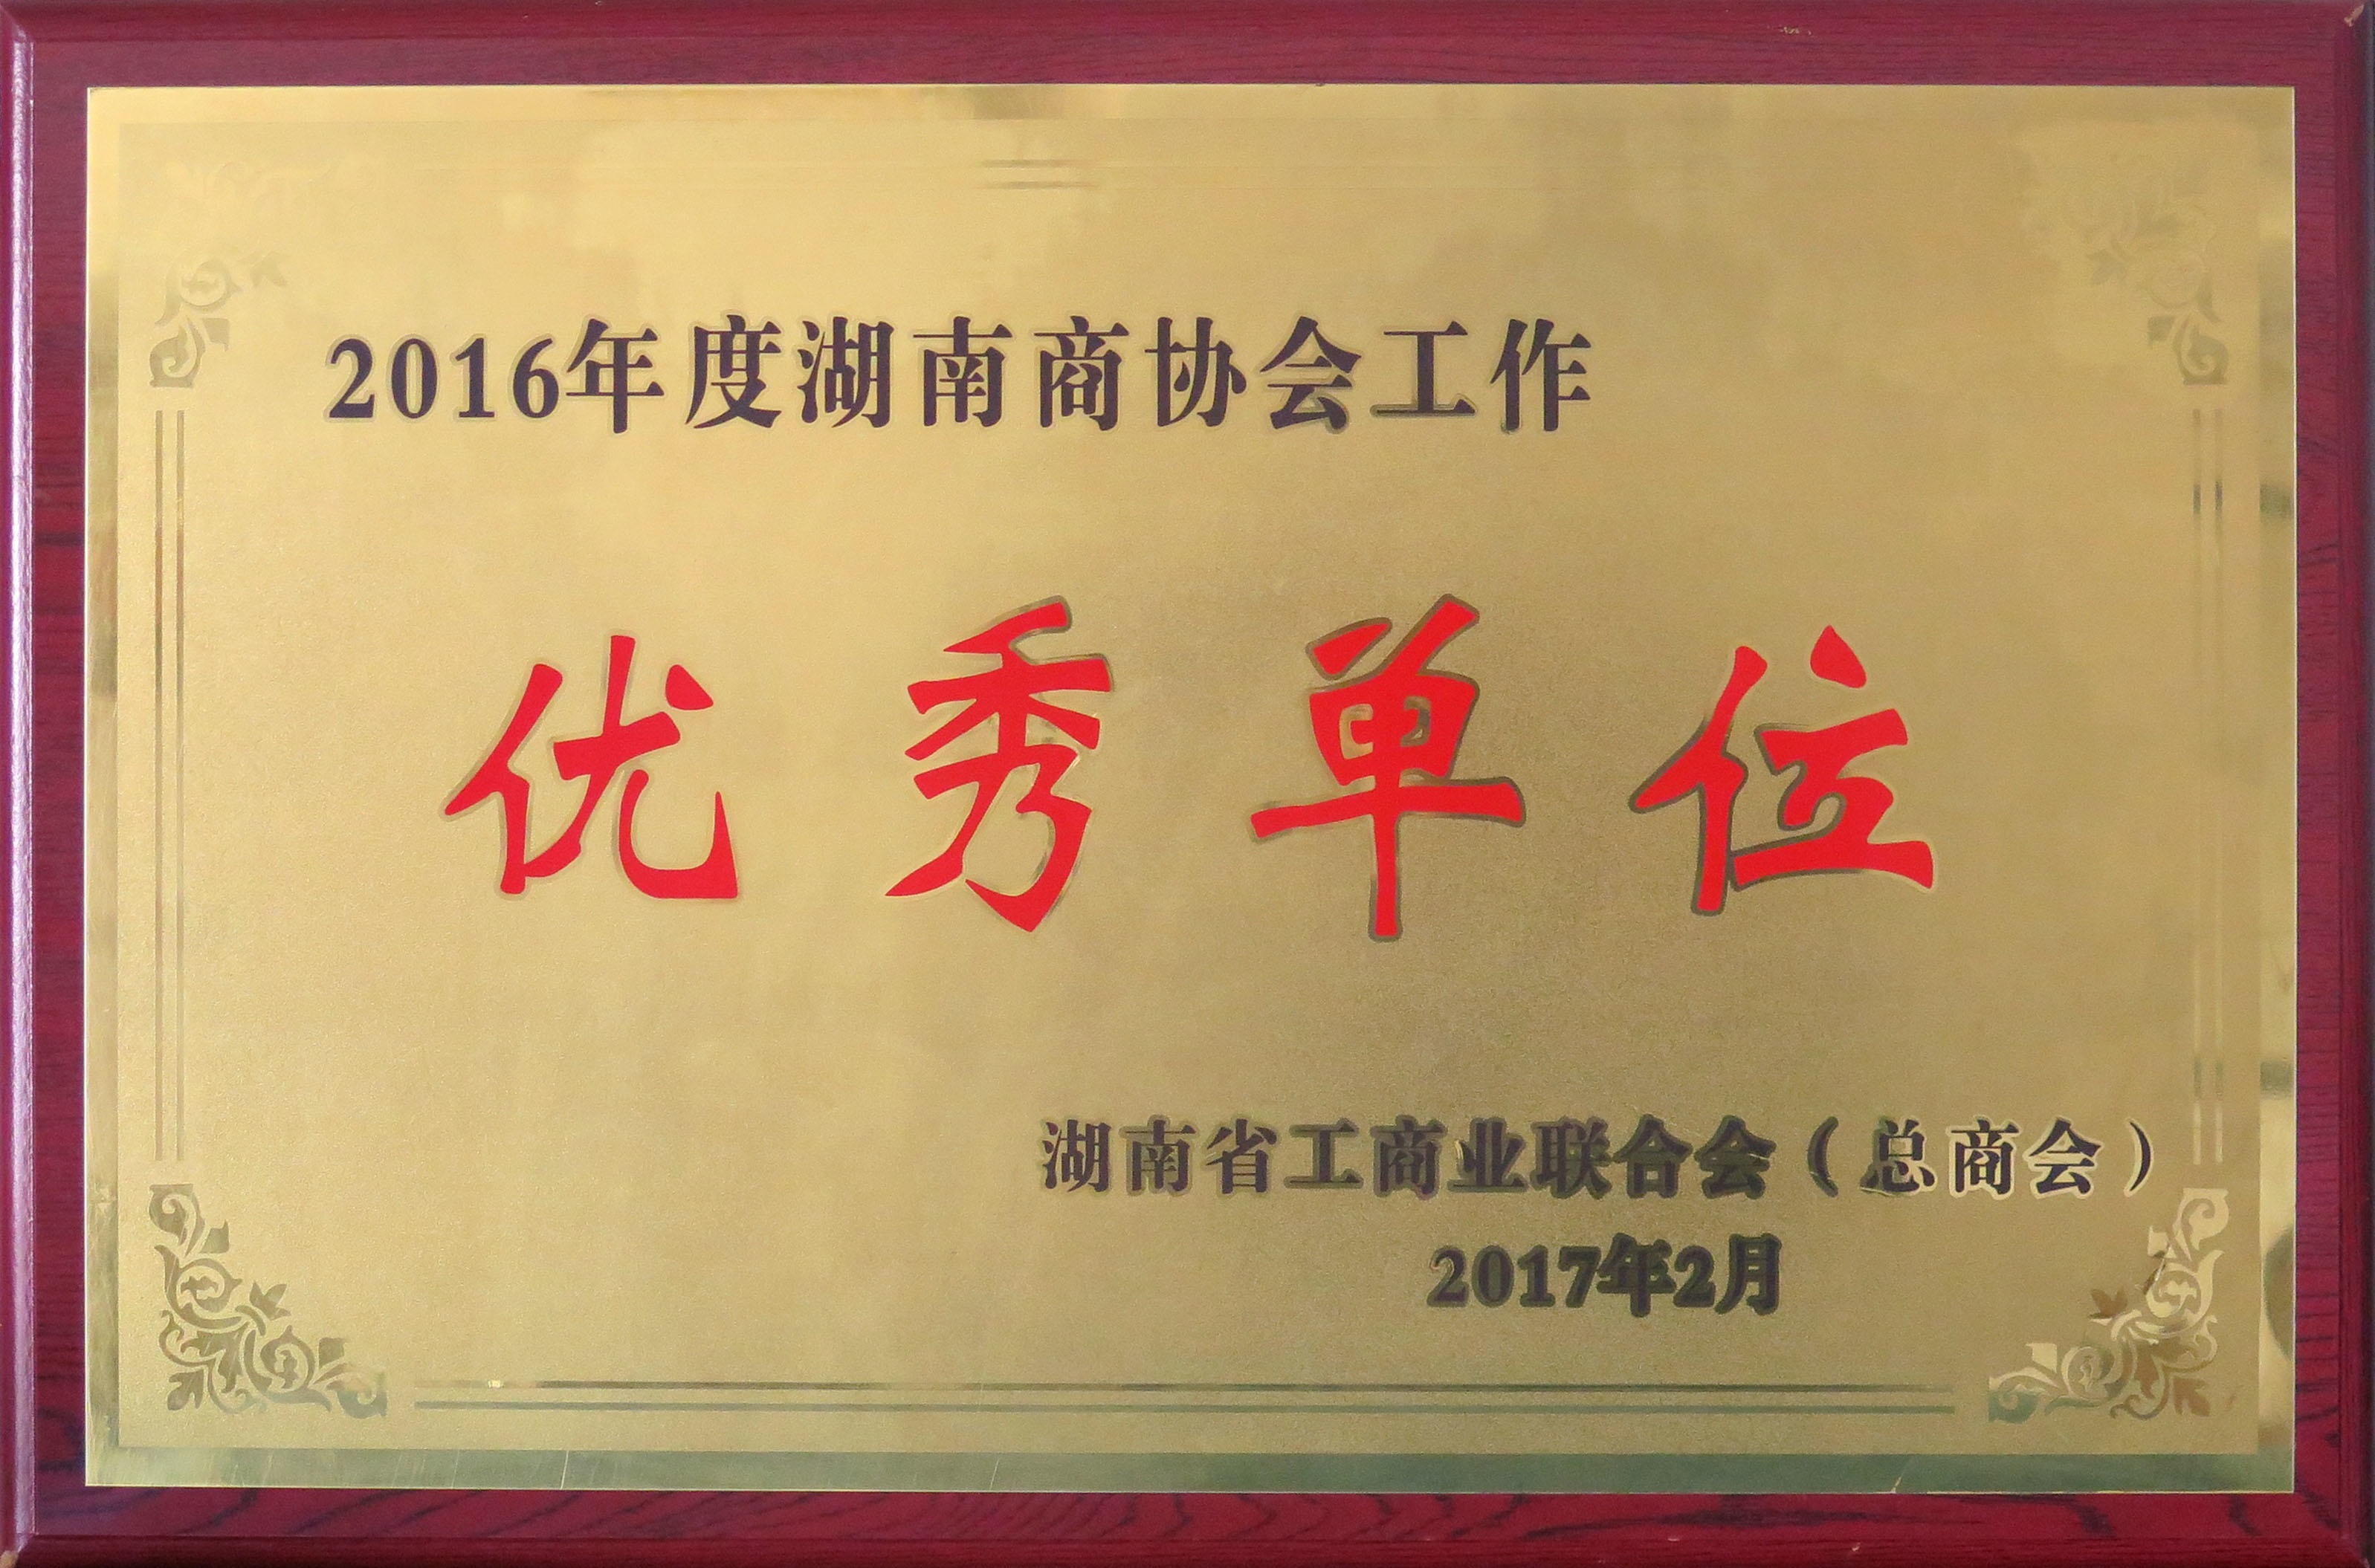 2016年度湖南商协会工作优秀单位